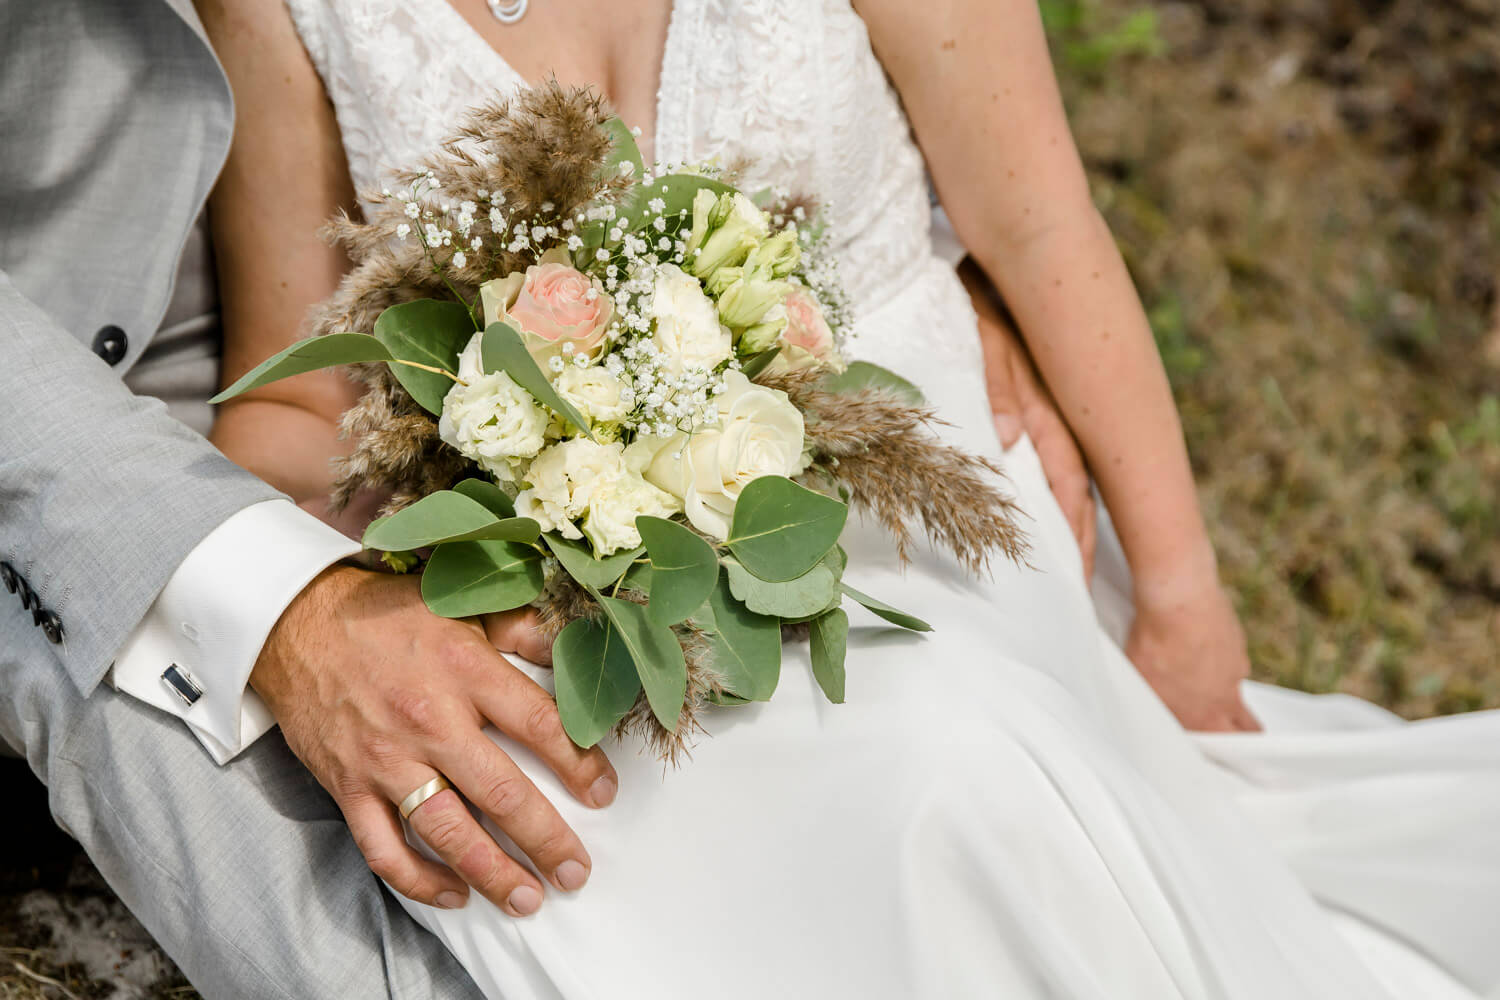 Detailfoto von der Hand des Bräutigams und dem modernen Brautstrauß mit Pampasgras und Rosen.